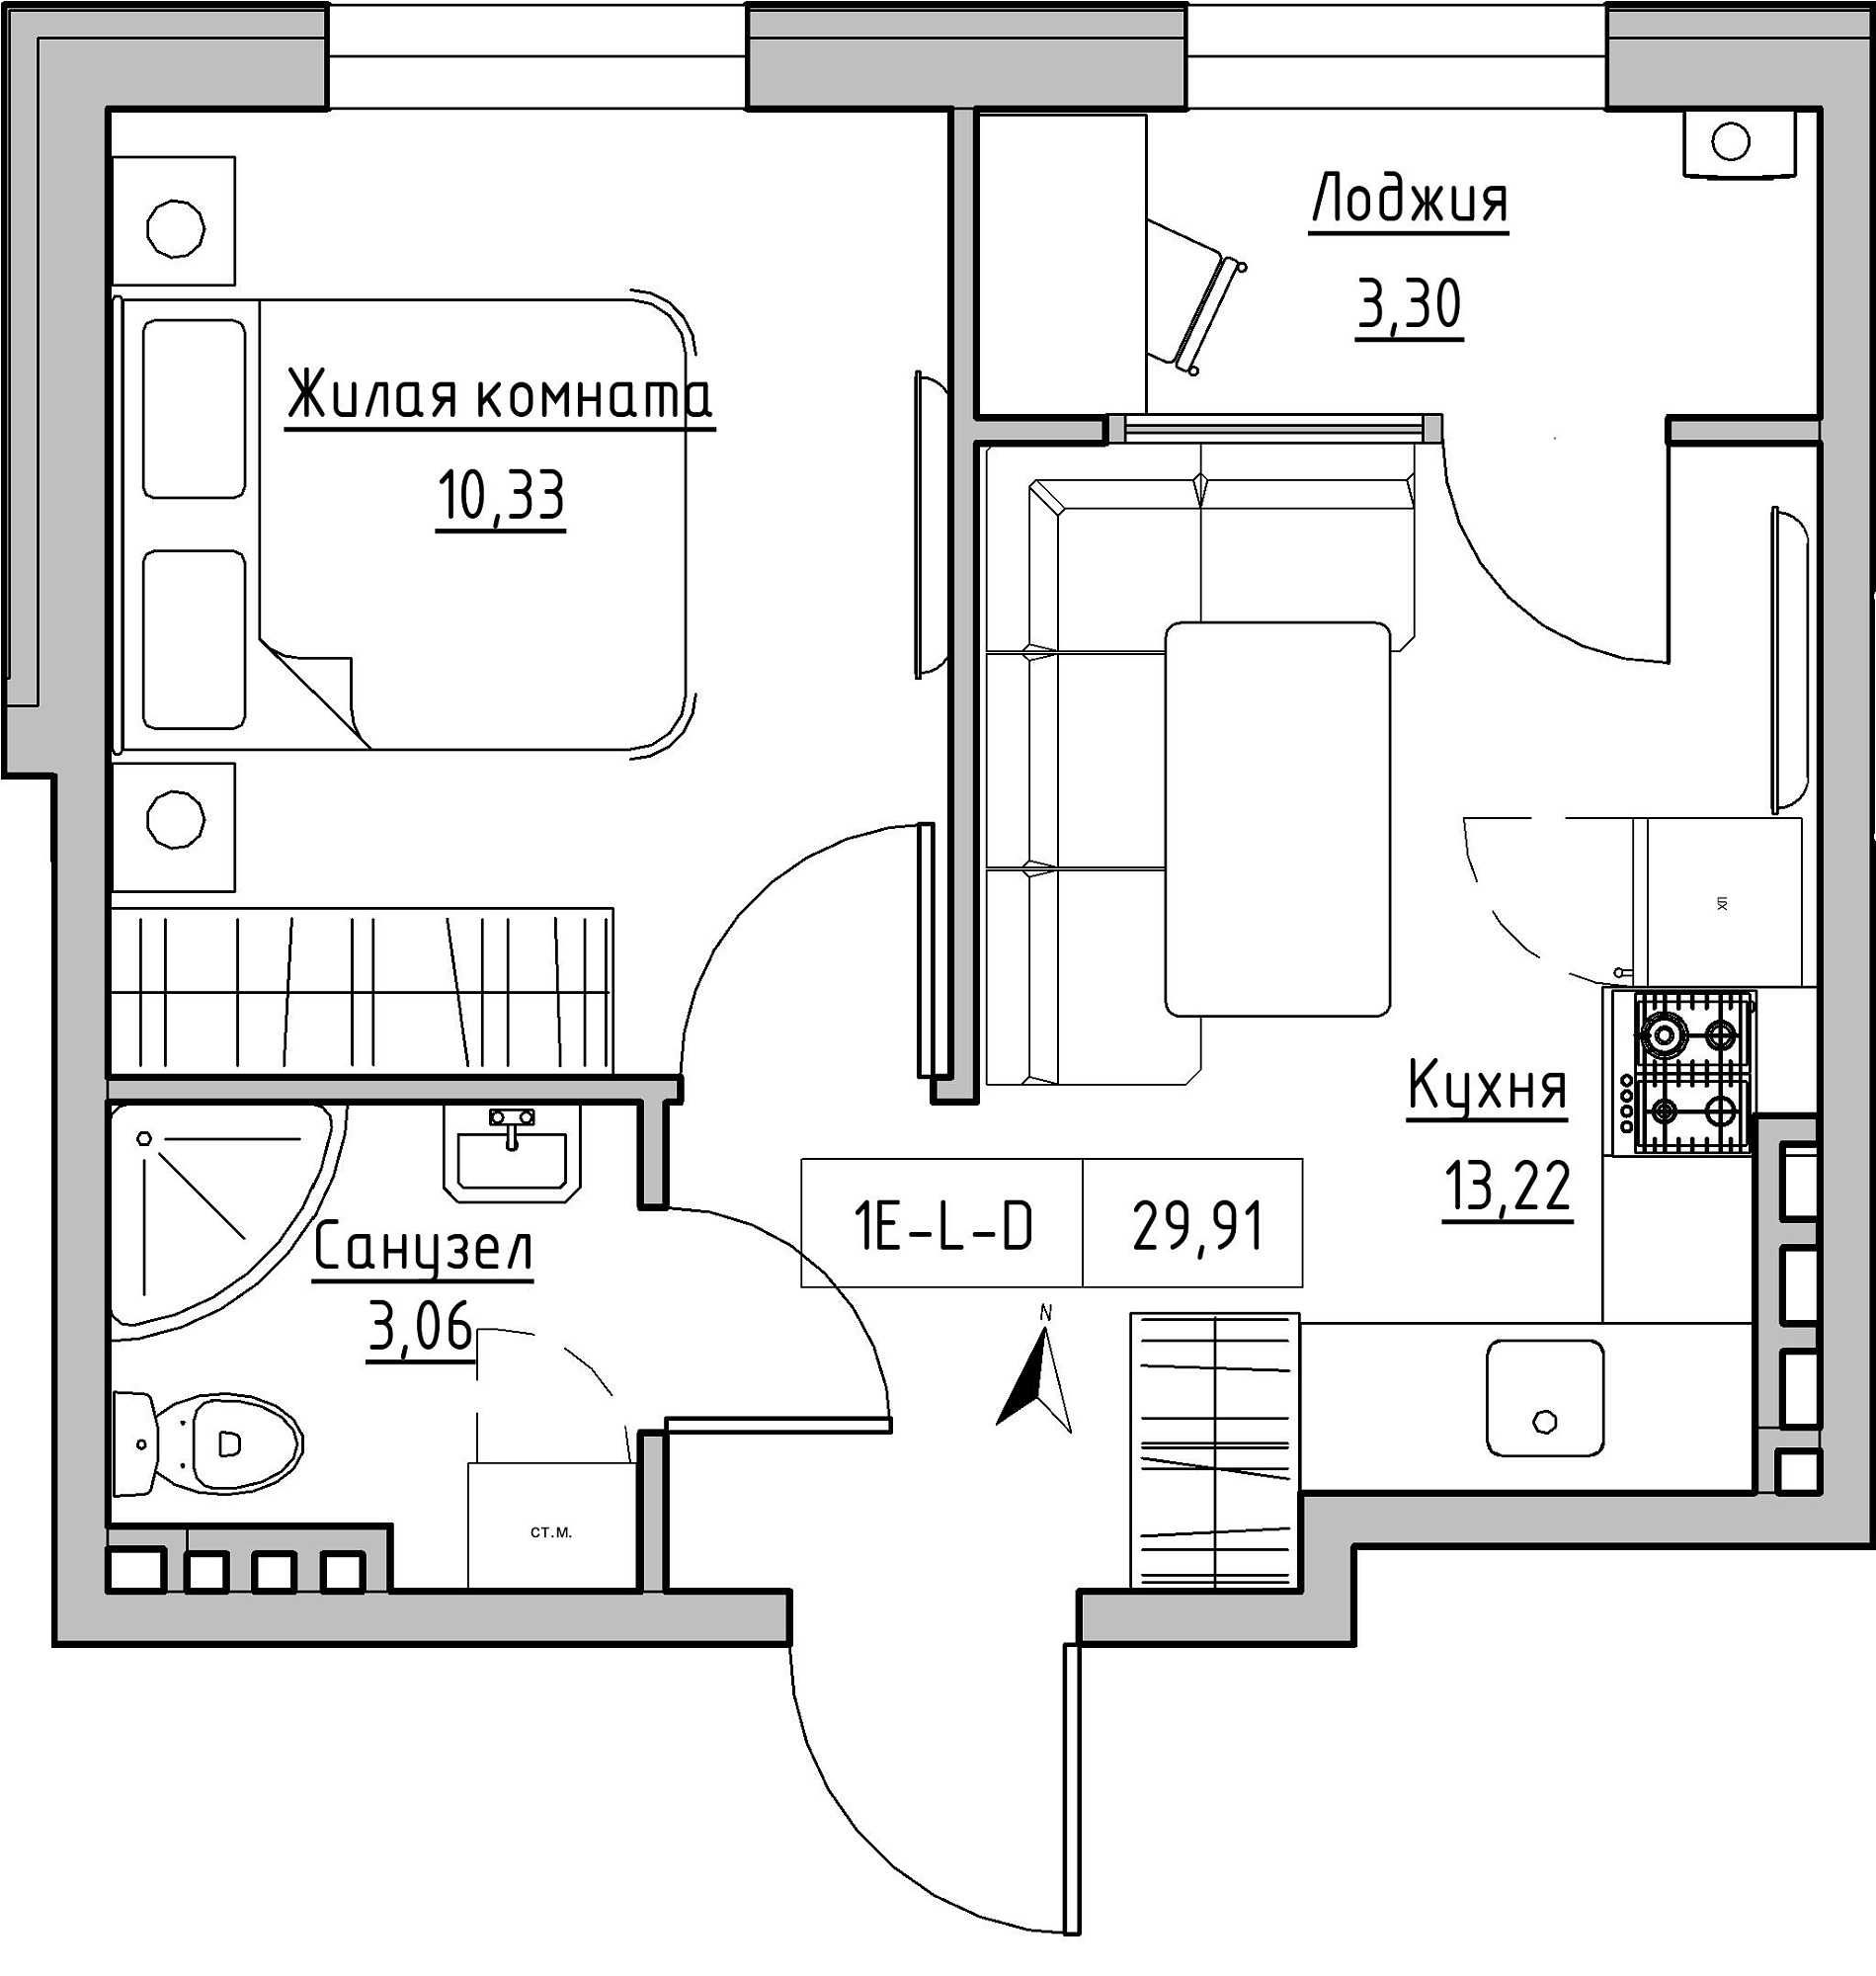 Планування 1-к квартира площею 29.91м2, KS-024-03/0001.